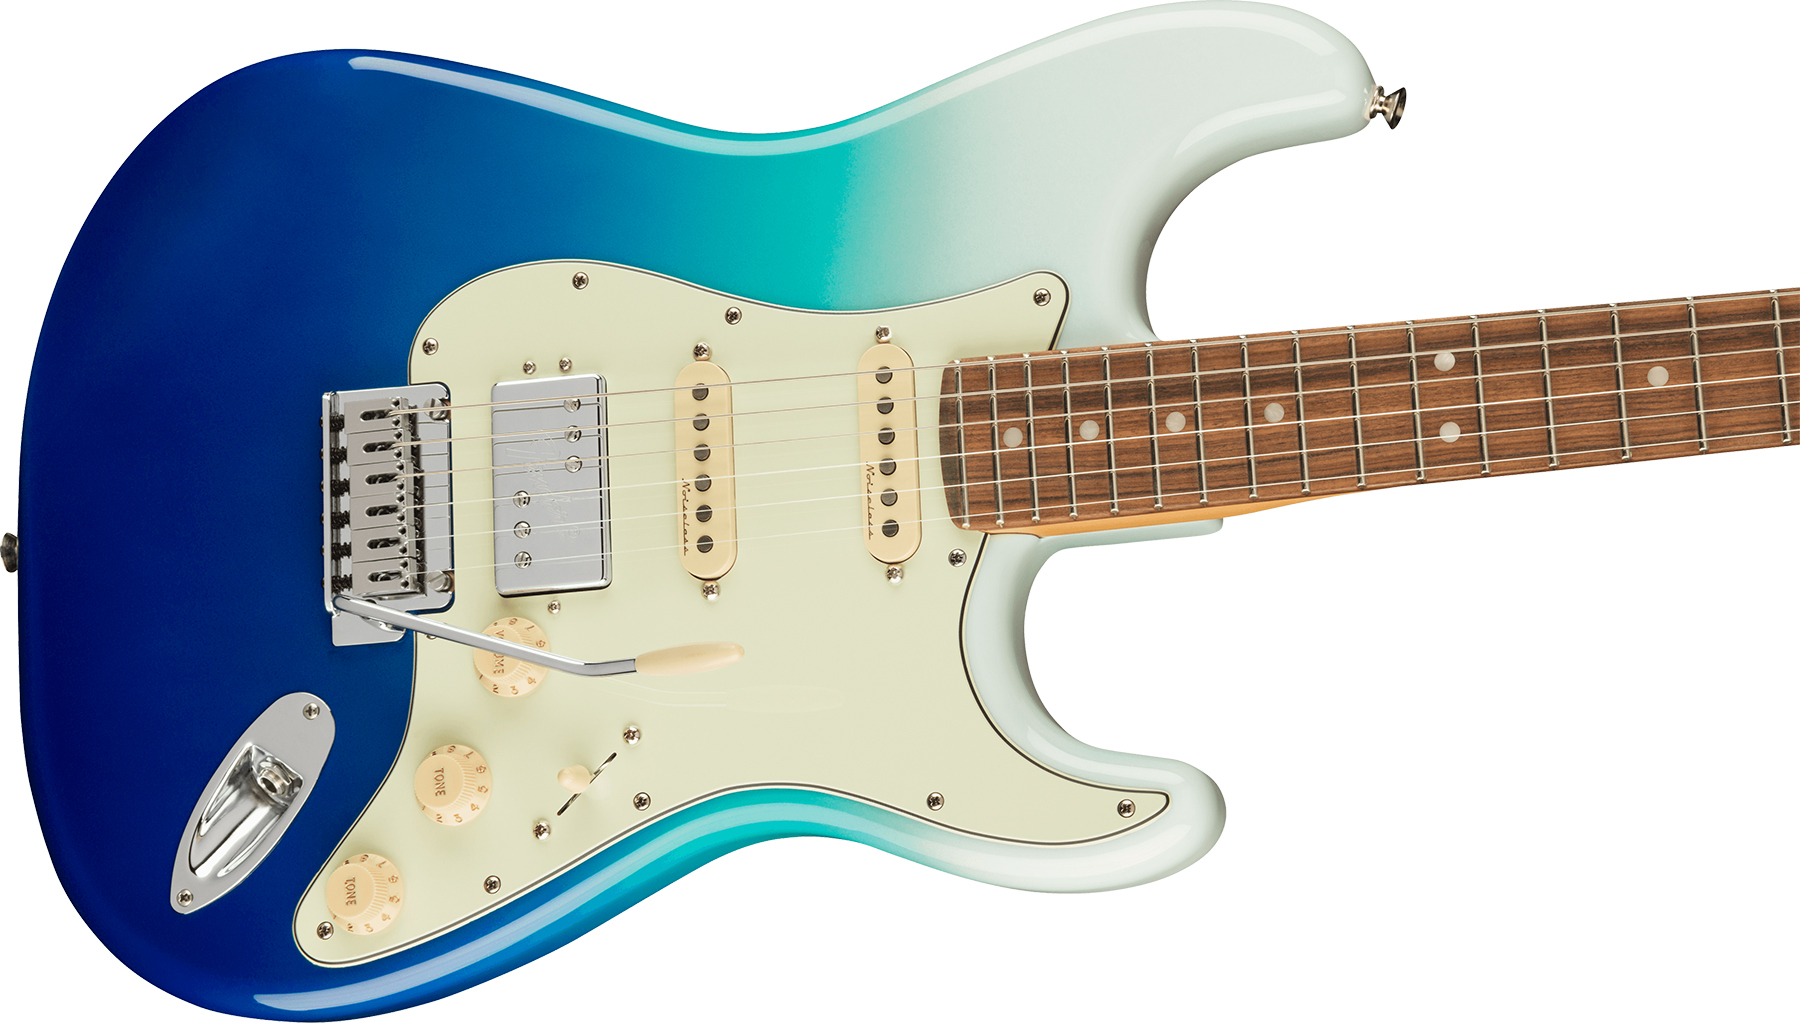 Fender Strat Player Plus Mex Hss Trem Pf - Belair Blue - Elektrische gitaar in Str-vorm - Variation 2